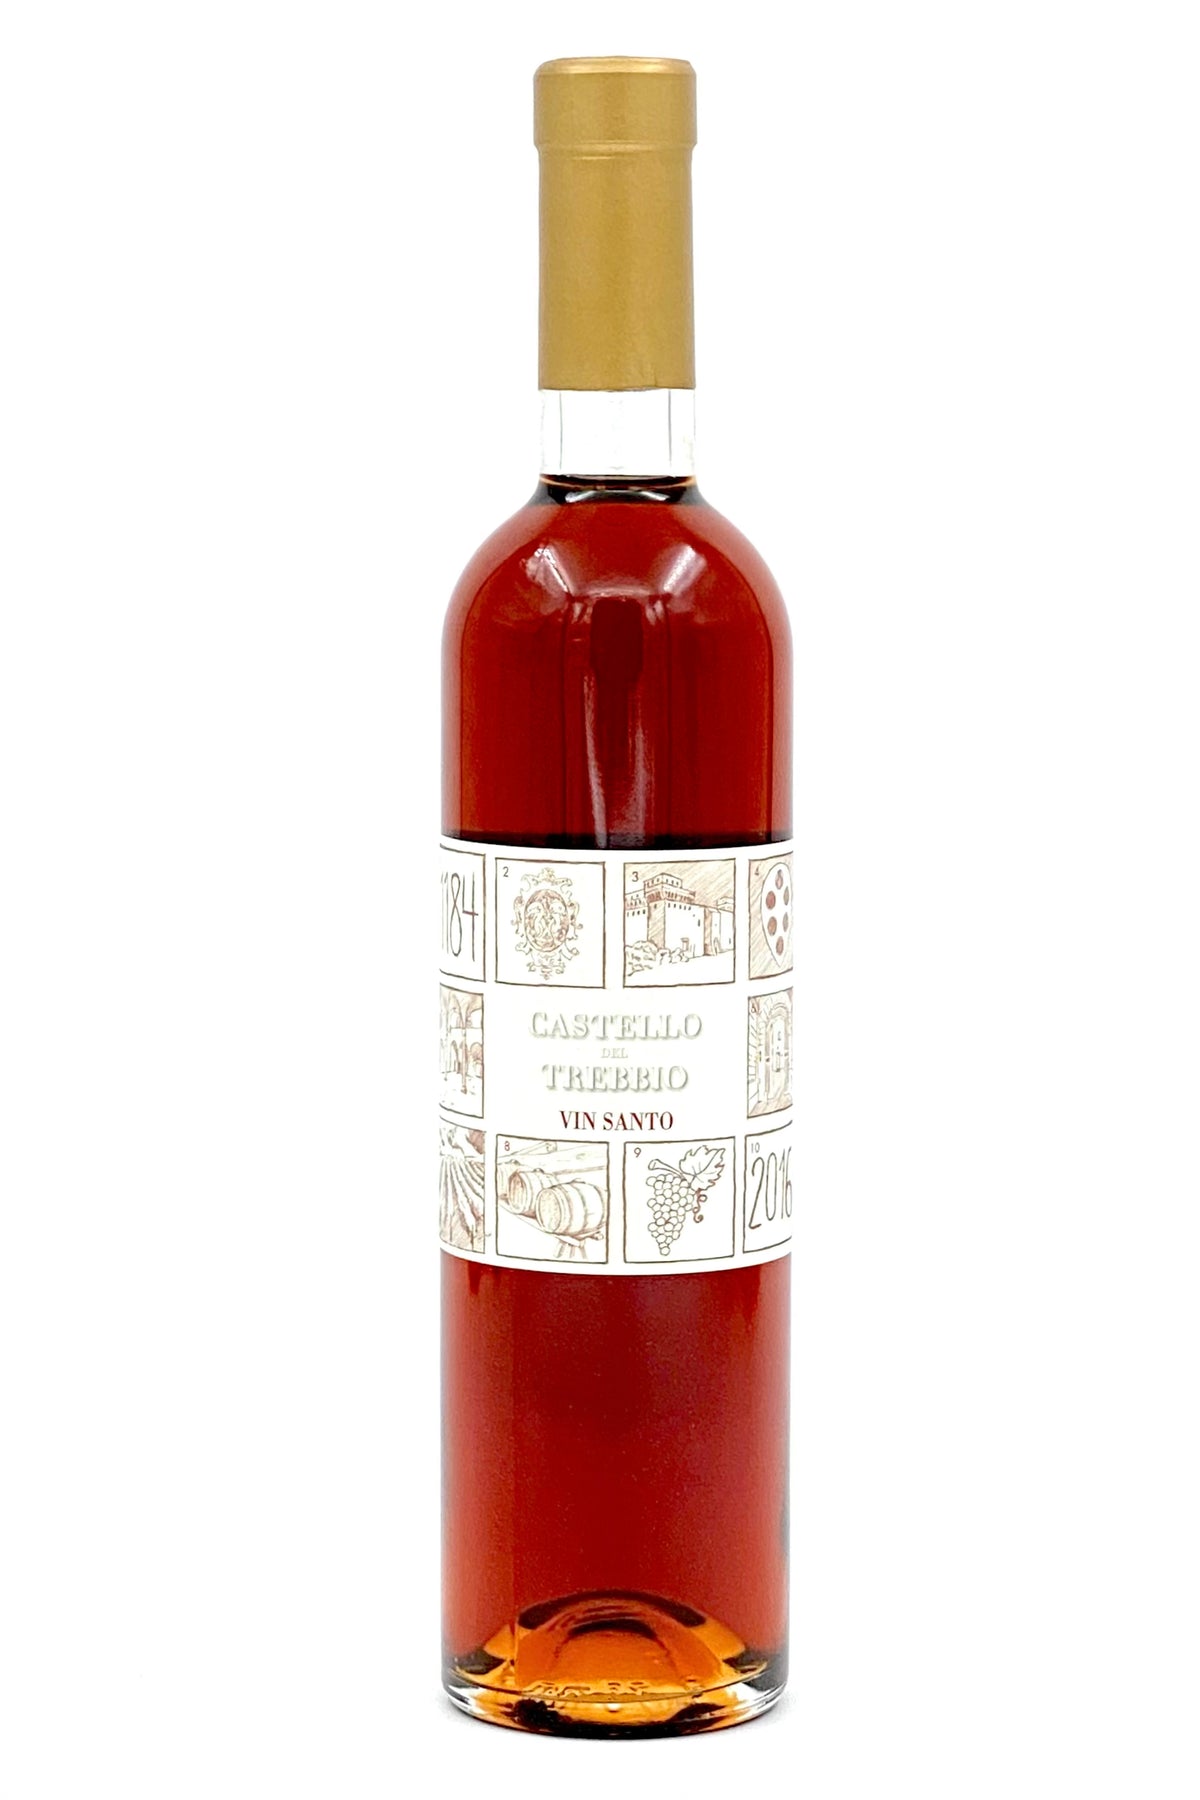 Castello de Trebbio 2016 Vin Santo del Chianti 500 ml